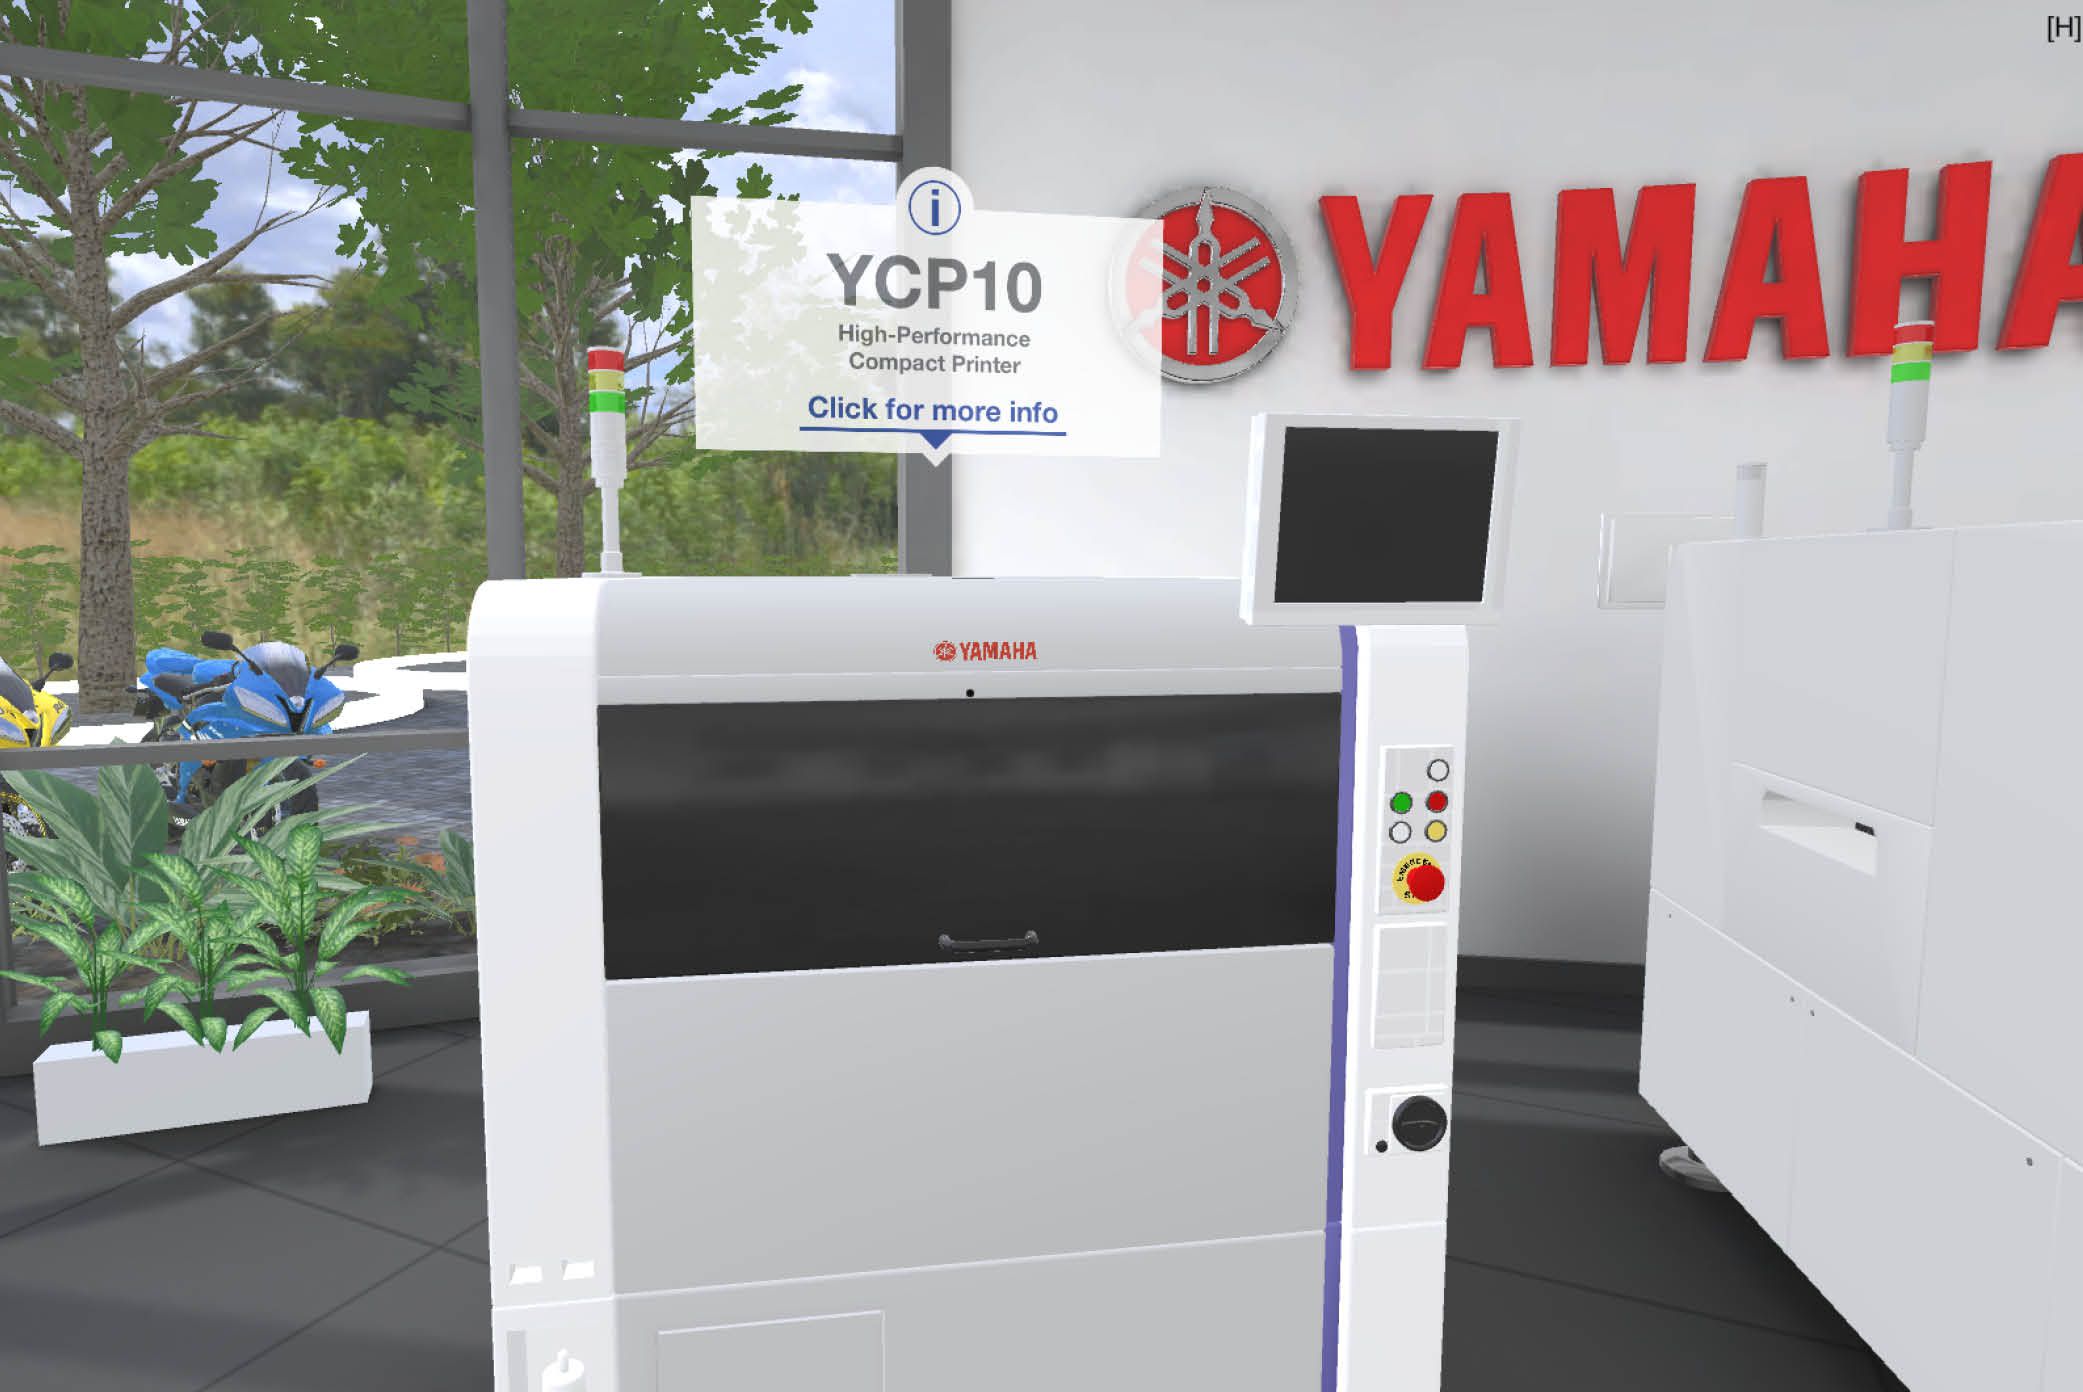 YAMAHA SMT virtual showroom is open 24/7